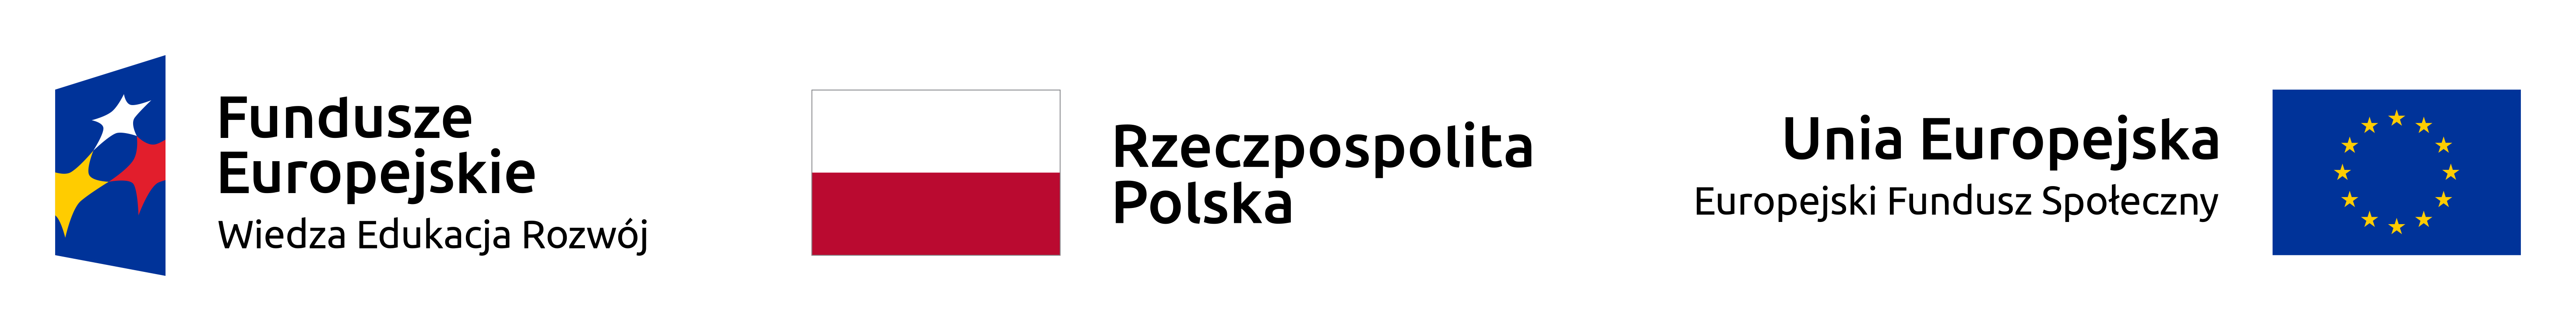 Fundusze Europejskie, Rzeczpospolita Polska, Unia Europejska Europejski Fundusz Społeczny